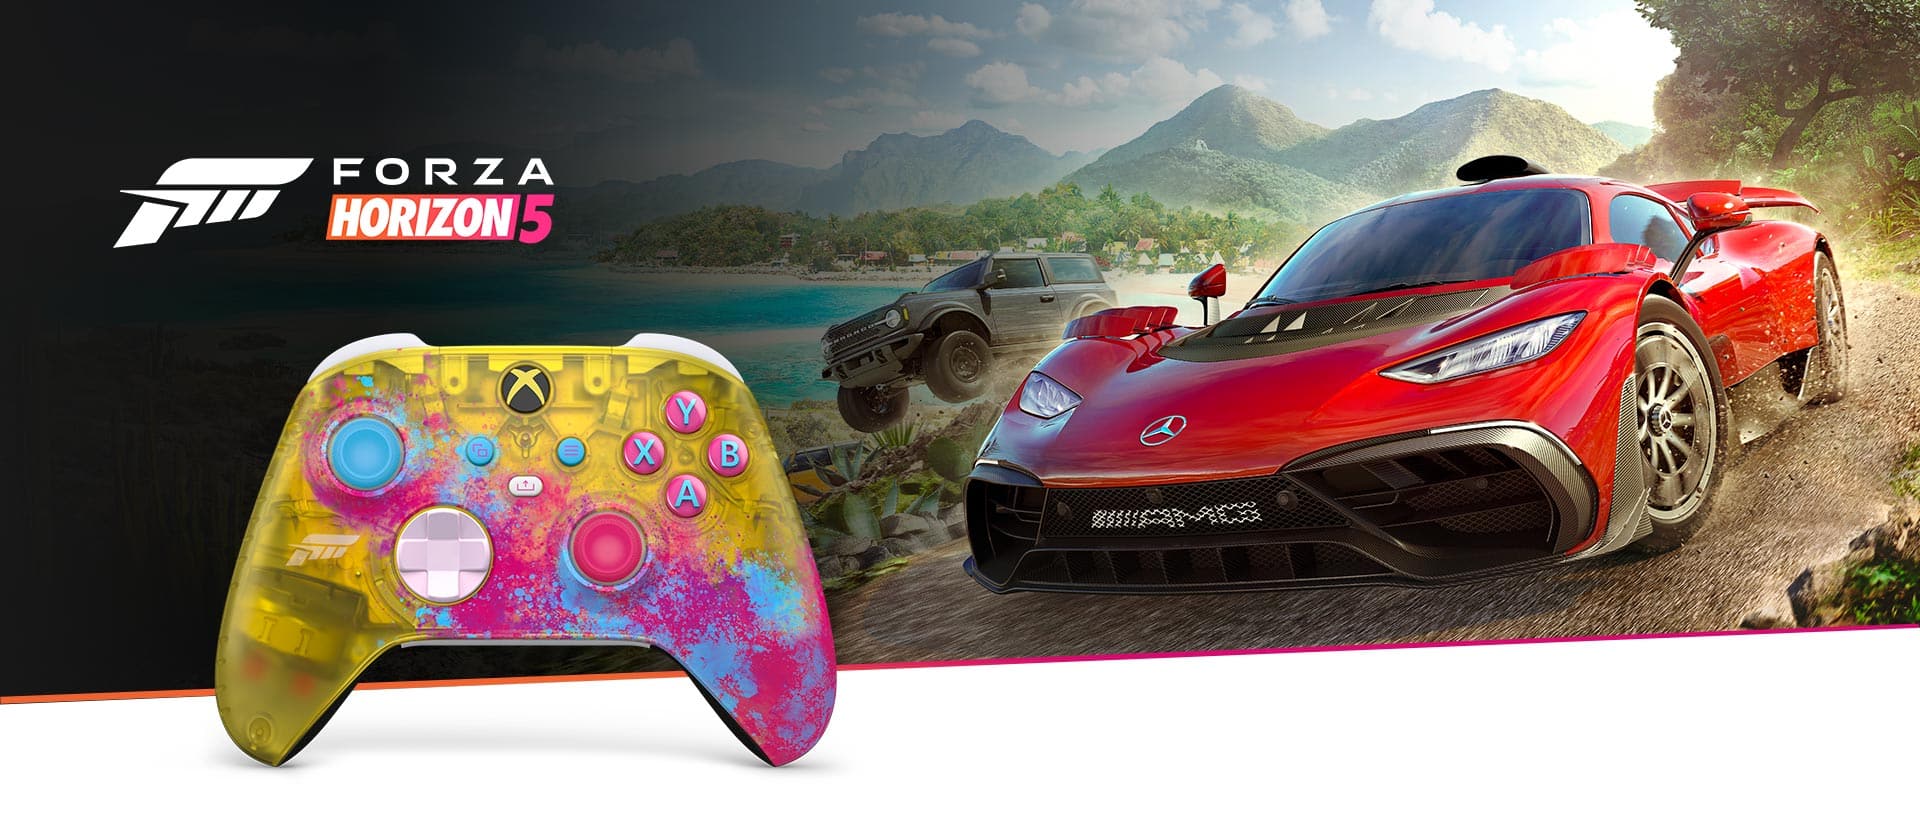 Forza Horizon 5, svelata la copertina e il controller a tema 1